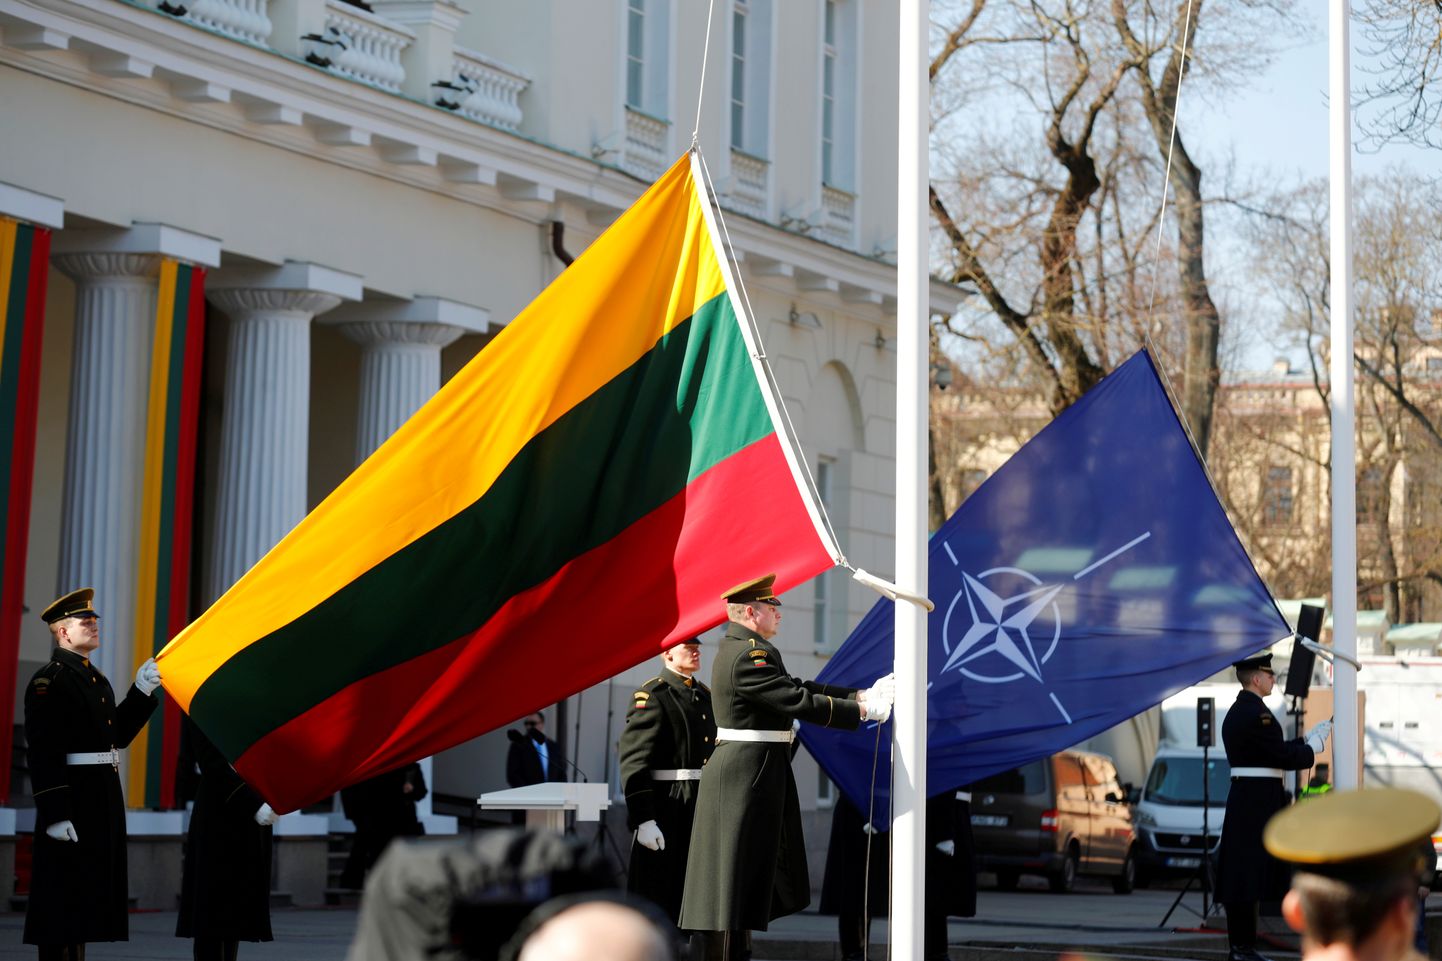 Leedu NATO-liikmesuse aastapäeva tähistamine Vilniuses. Foto on illustratiivne.